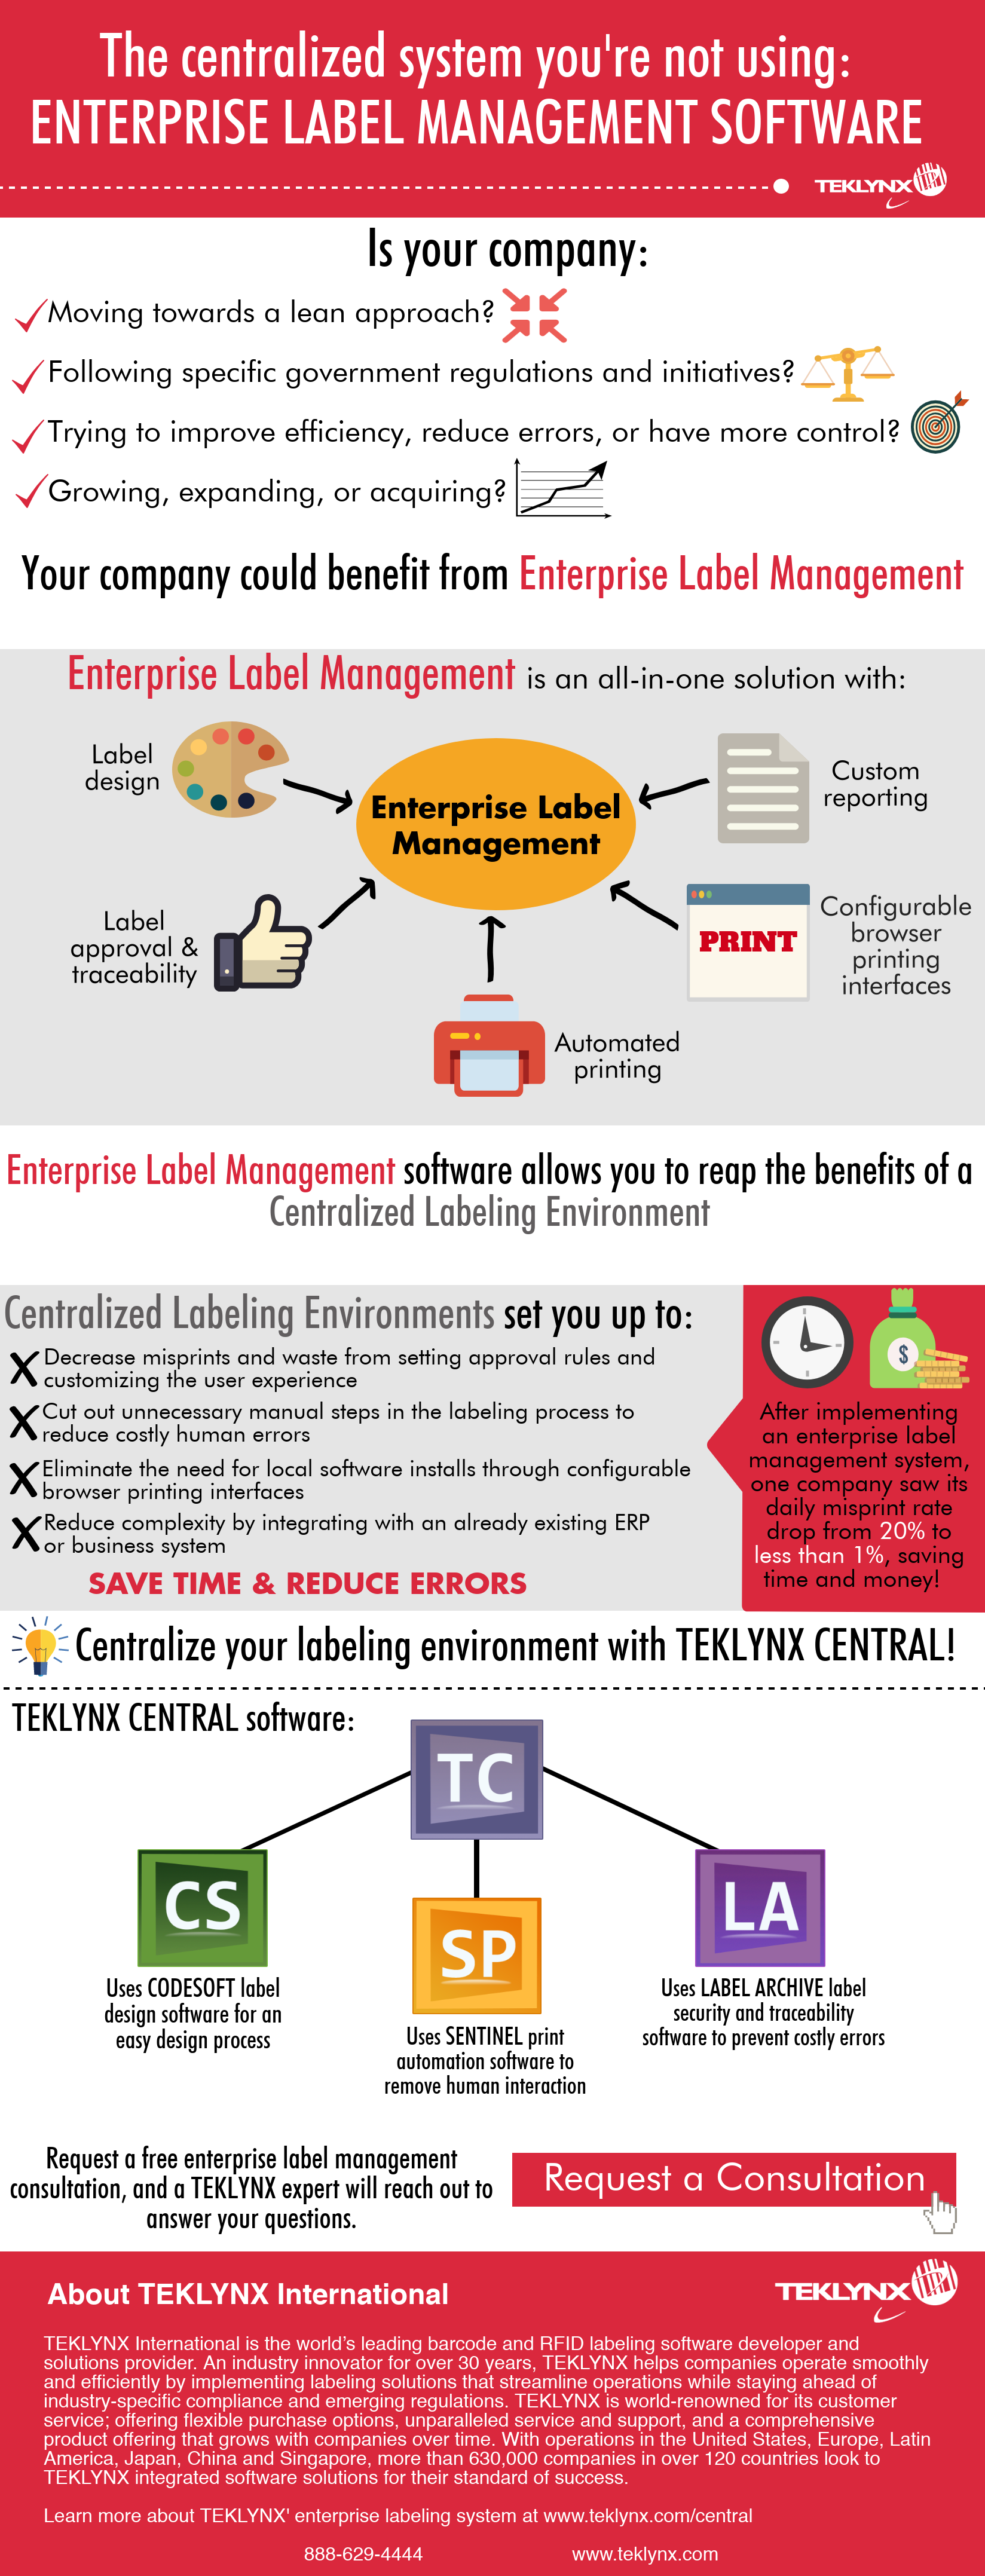 Das zentralisierte System, das Sie nicht verwenden: Enterprise Label Management Software